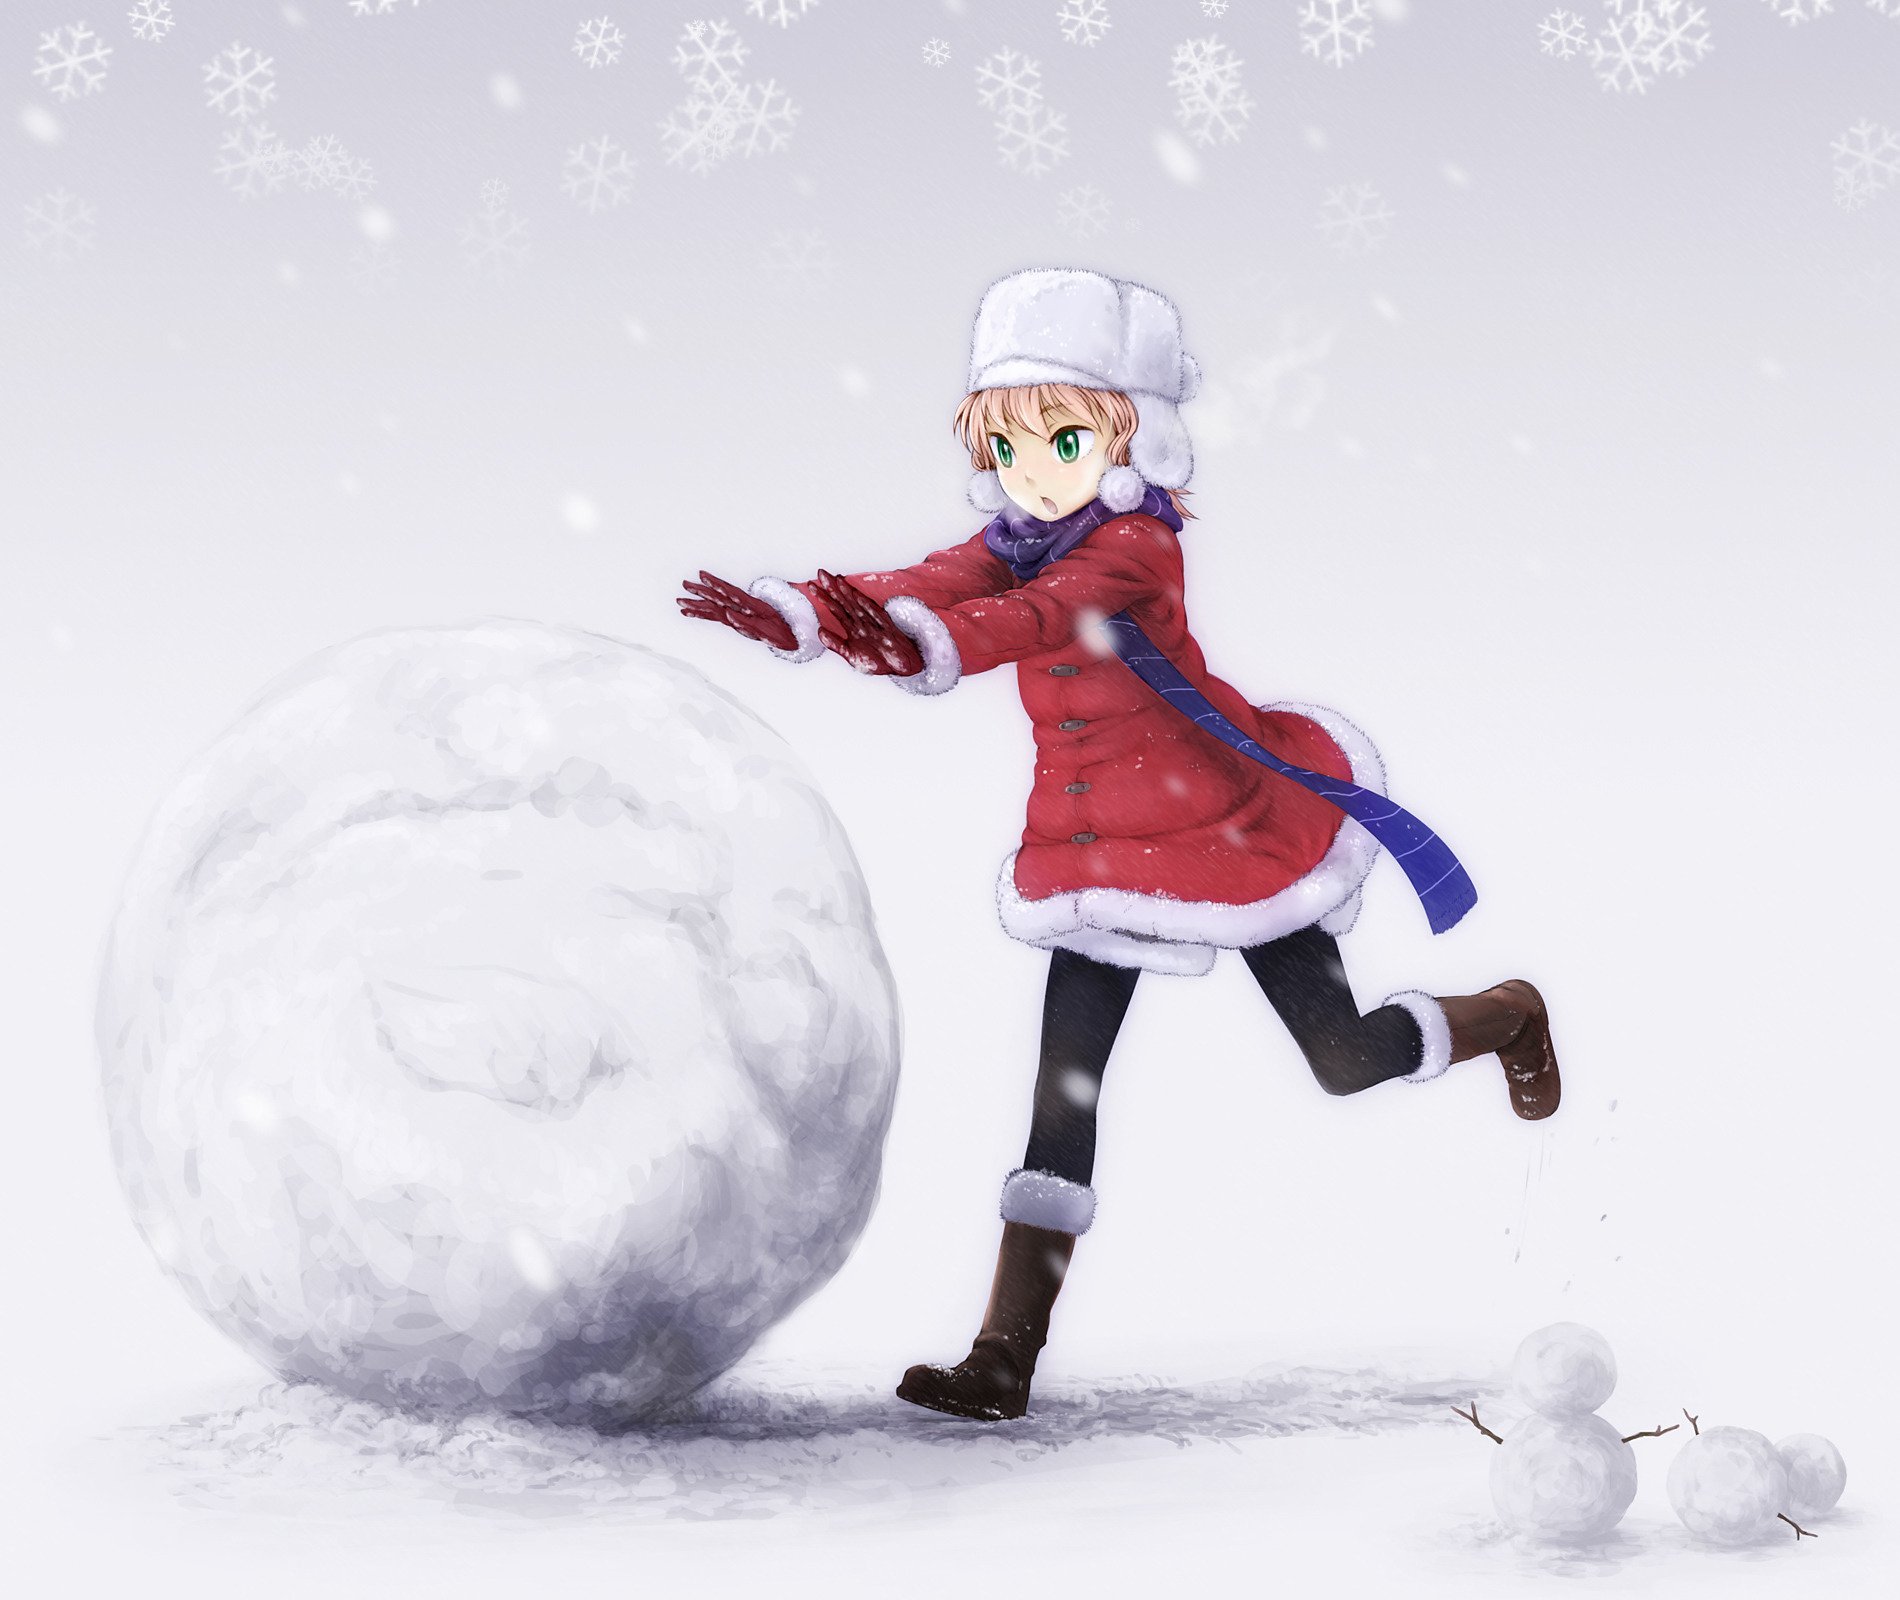 Играть в снежки снеговик